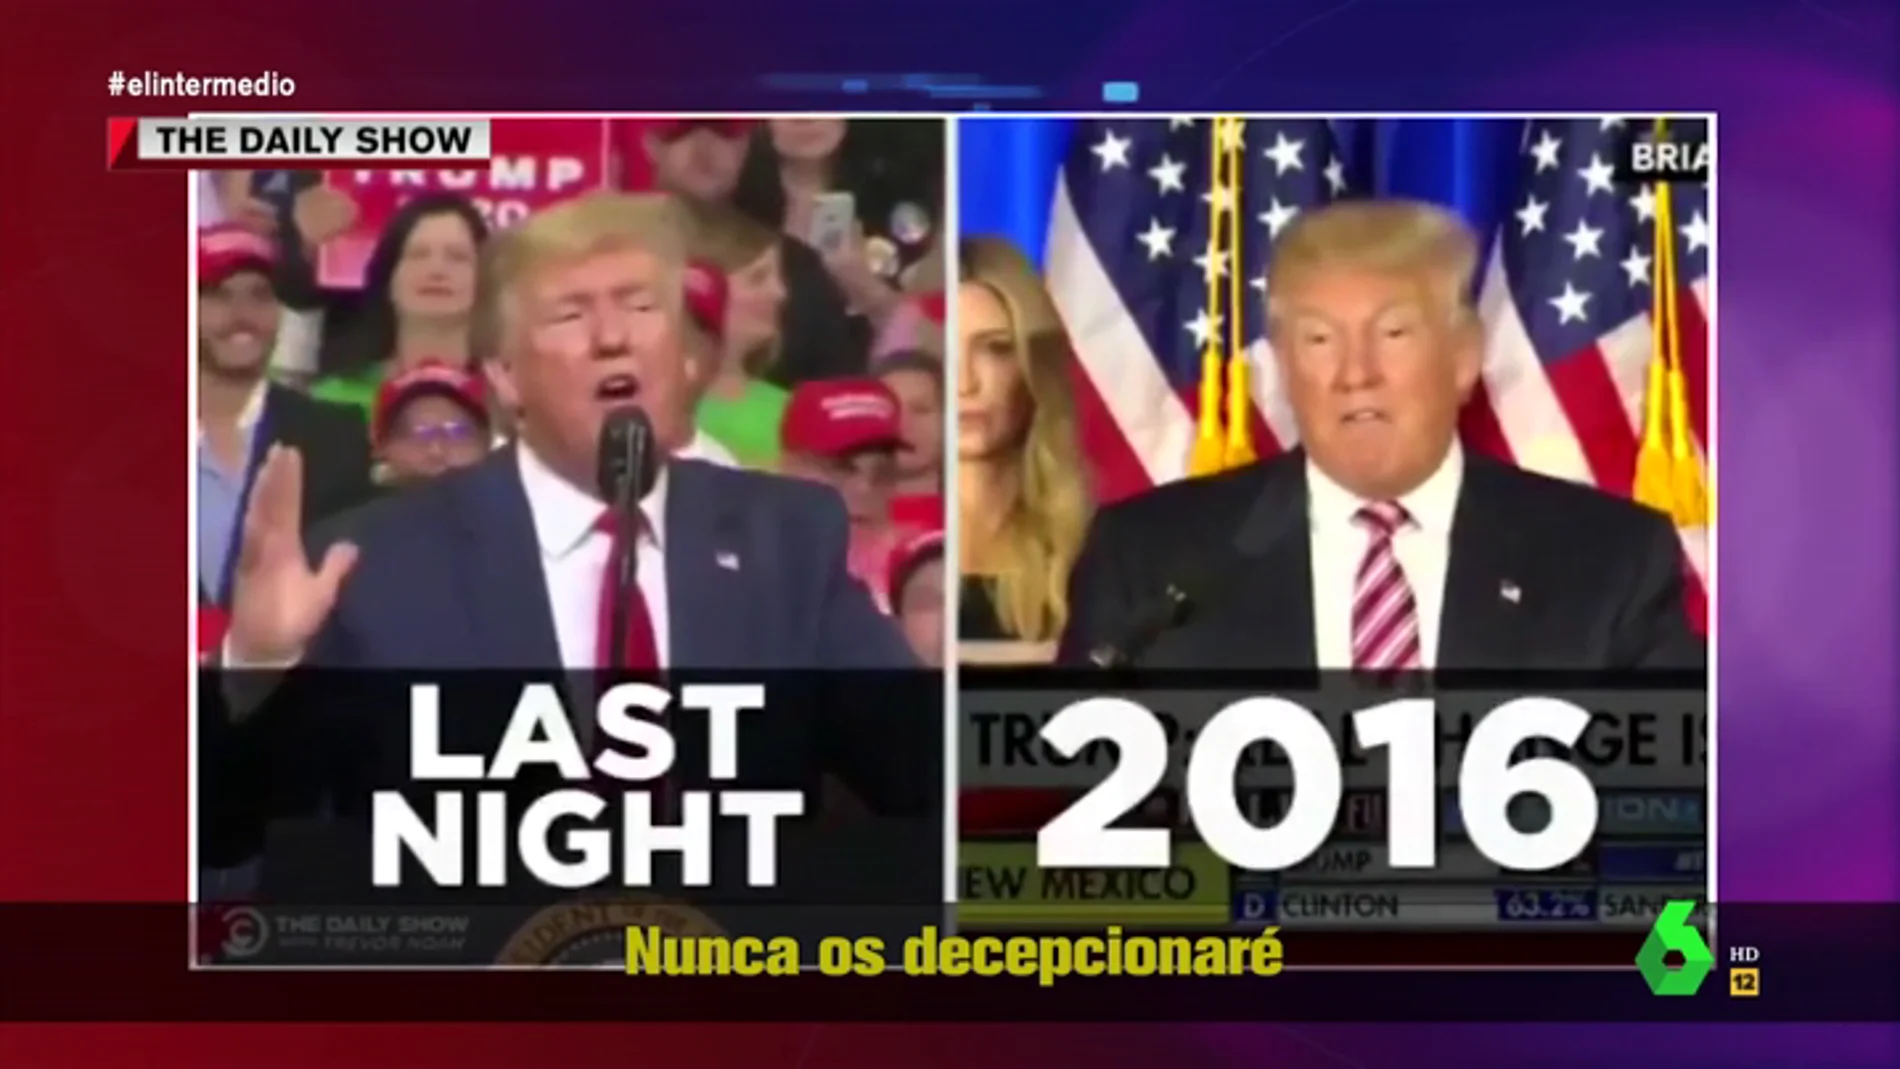  Estas son las diferencias entre el discurso de la campaña de Donald Trump en 2016 y su discurso de reelección